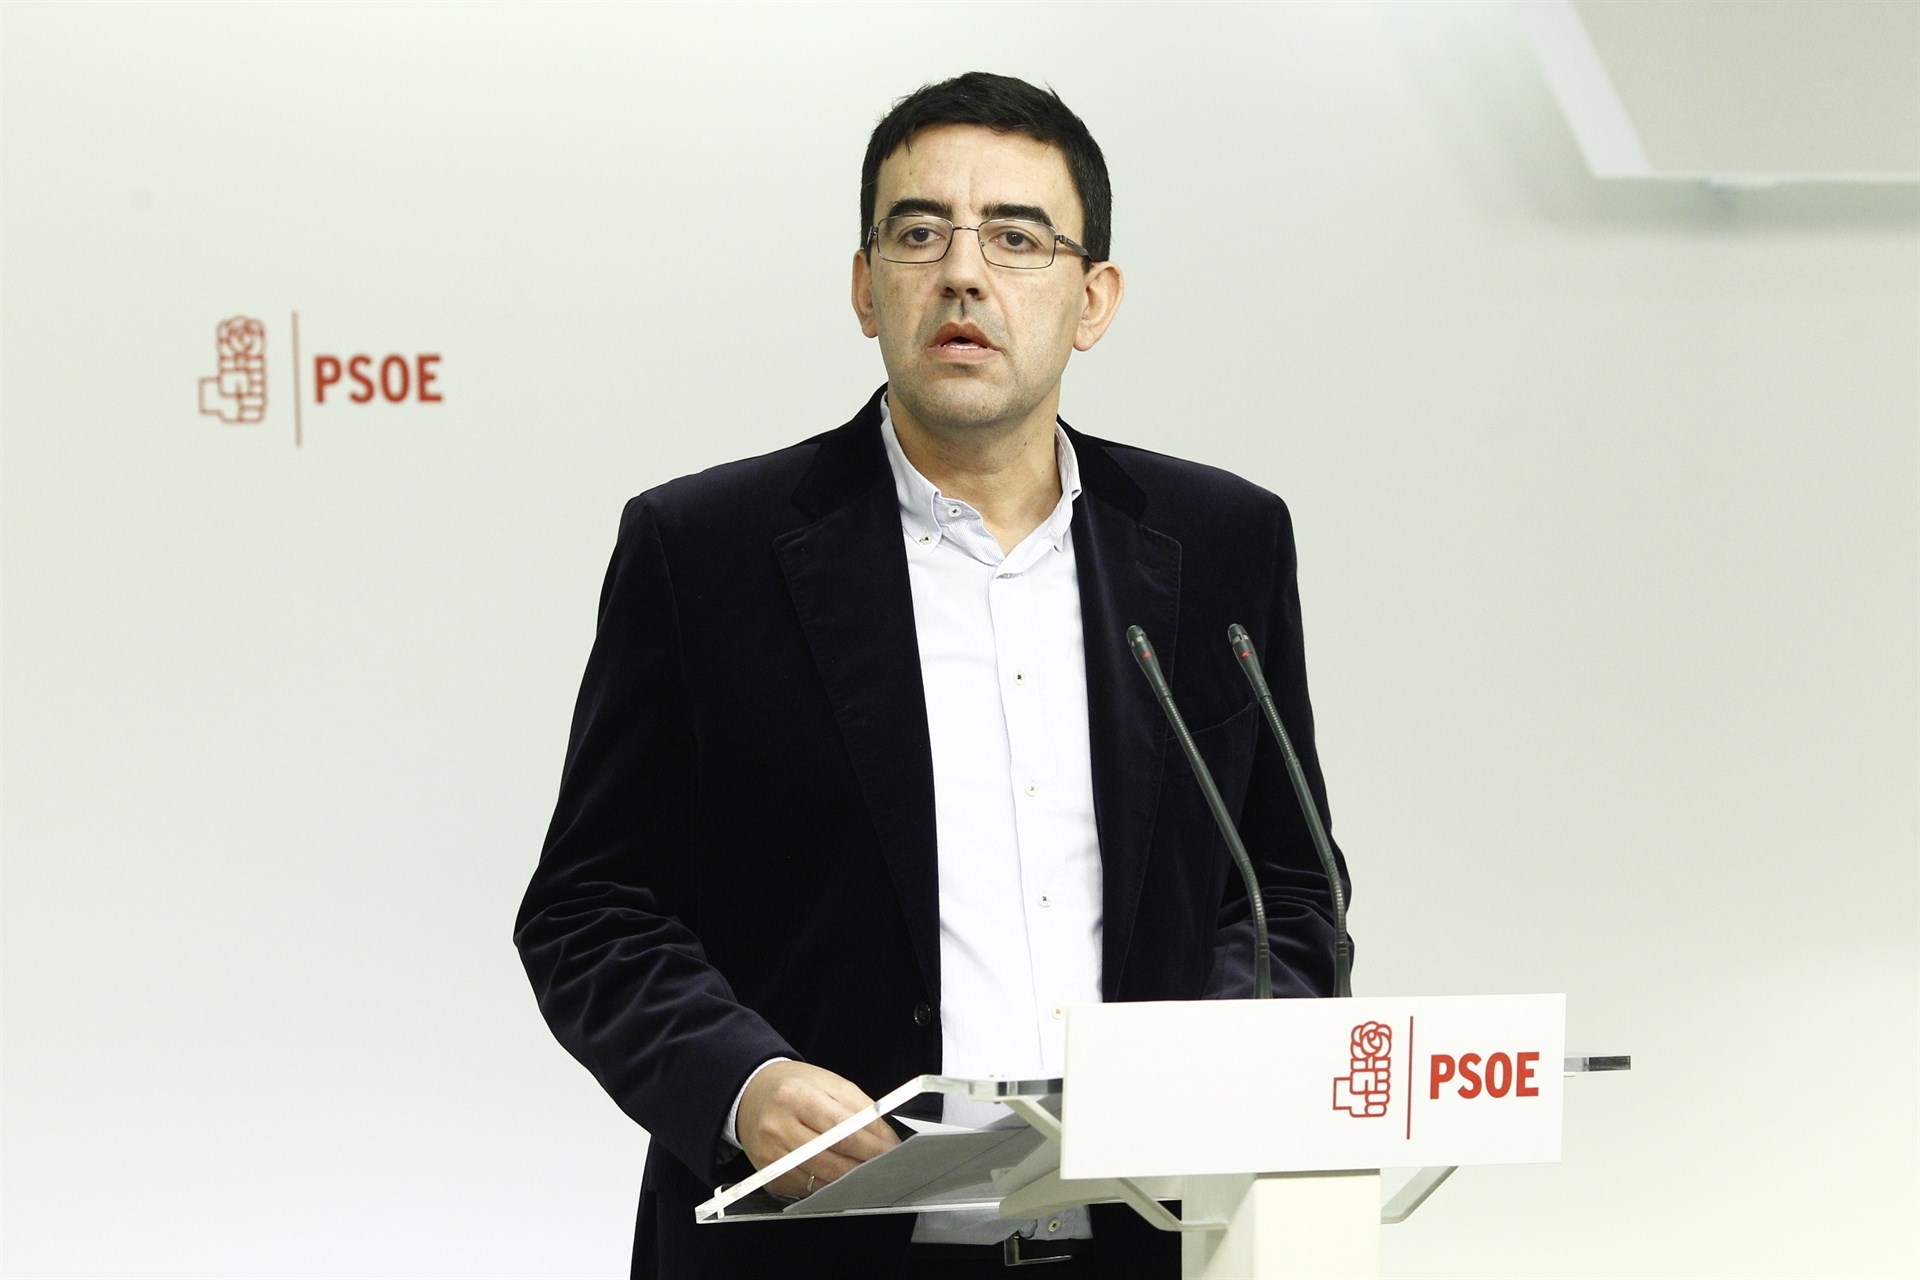 El presidente de la Gestora del PSOE, Mario Jiménez, ante los medios.